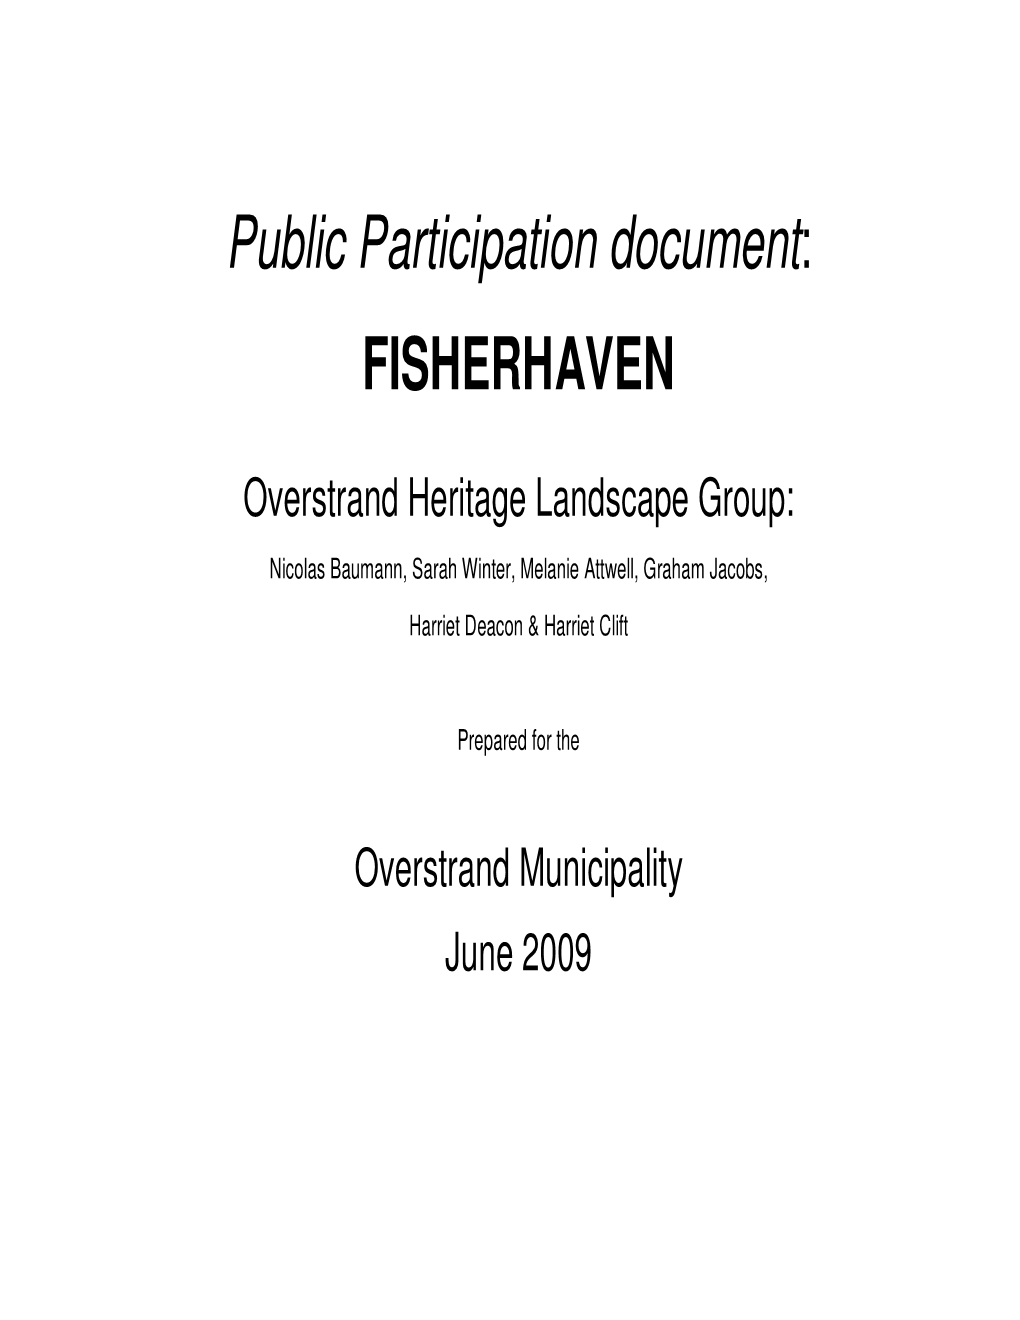 Public Participation Document: FISHERHAVEN